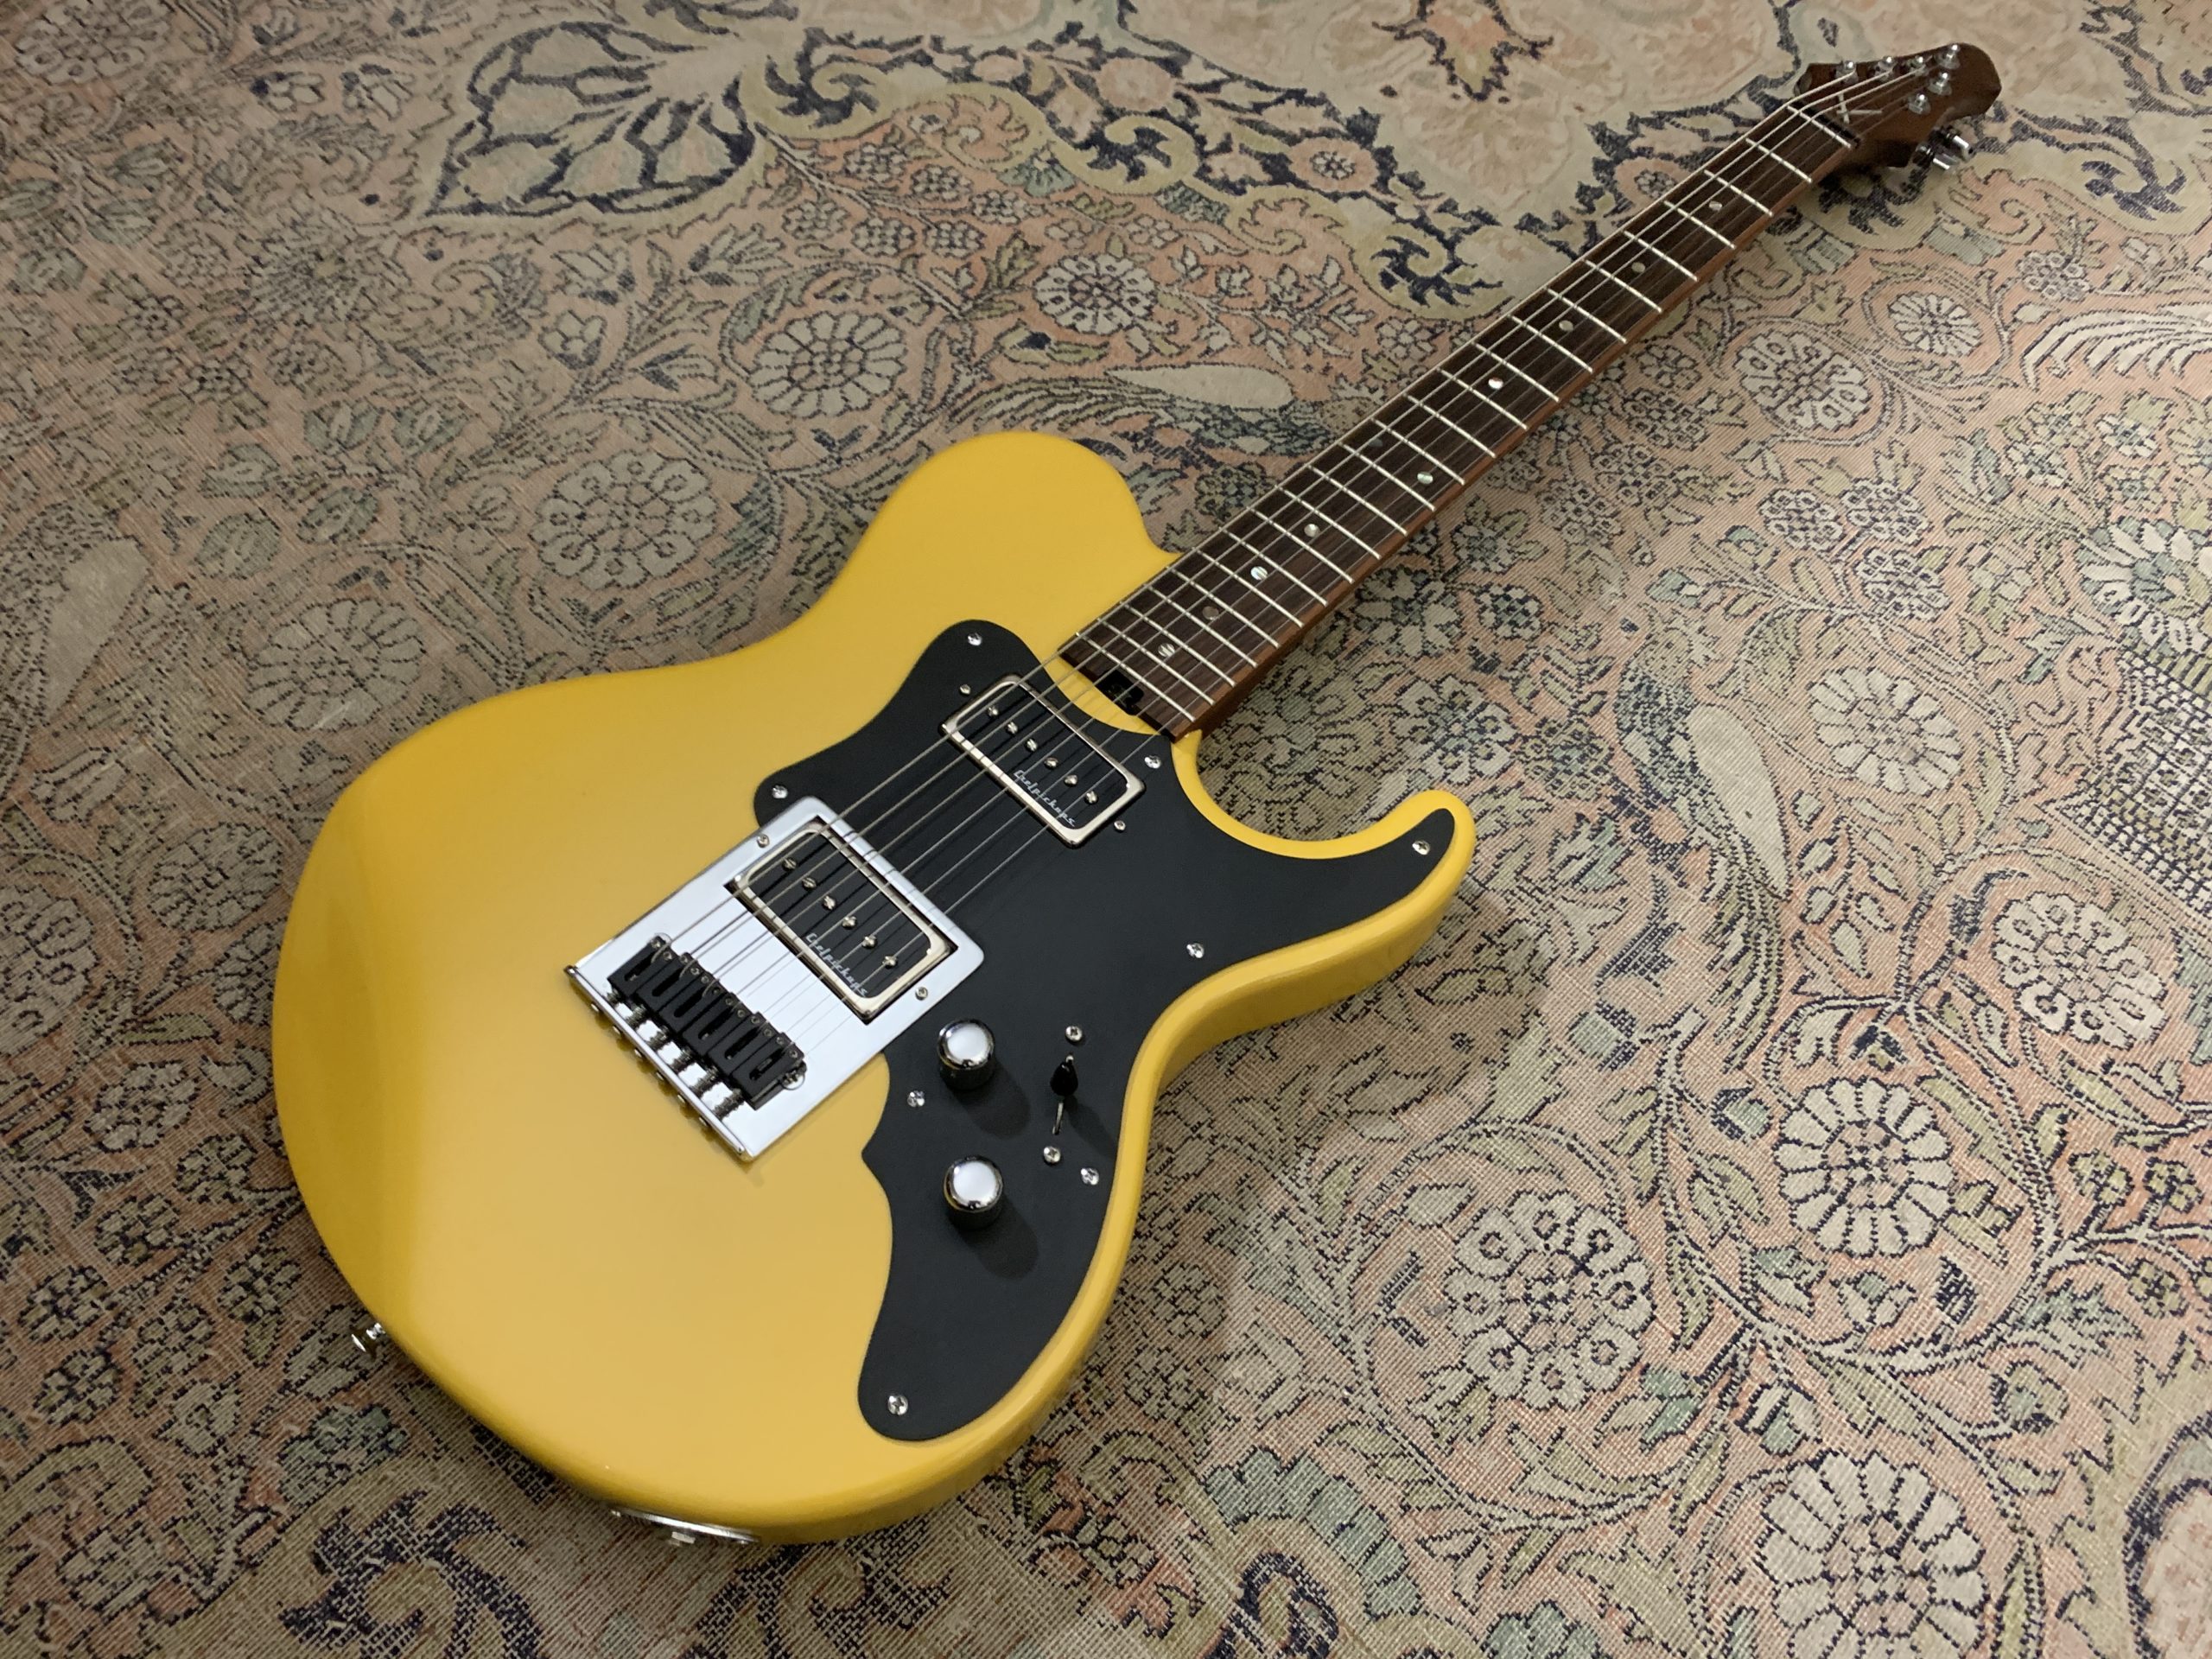 KMG modèle Klepto, une guitare du luthier construite avec le Ace Tone System